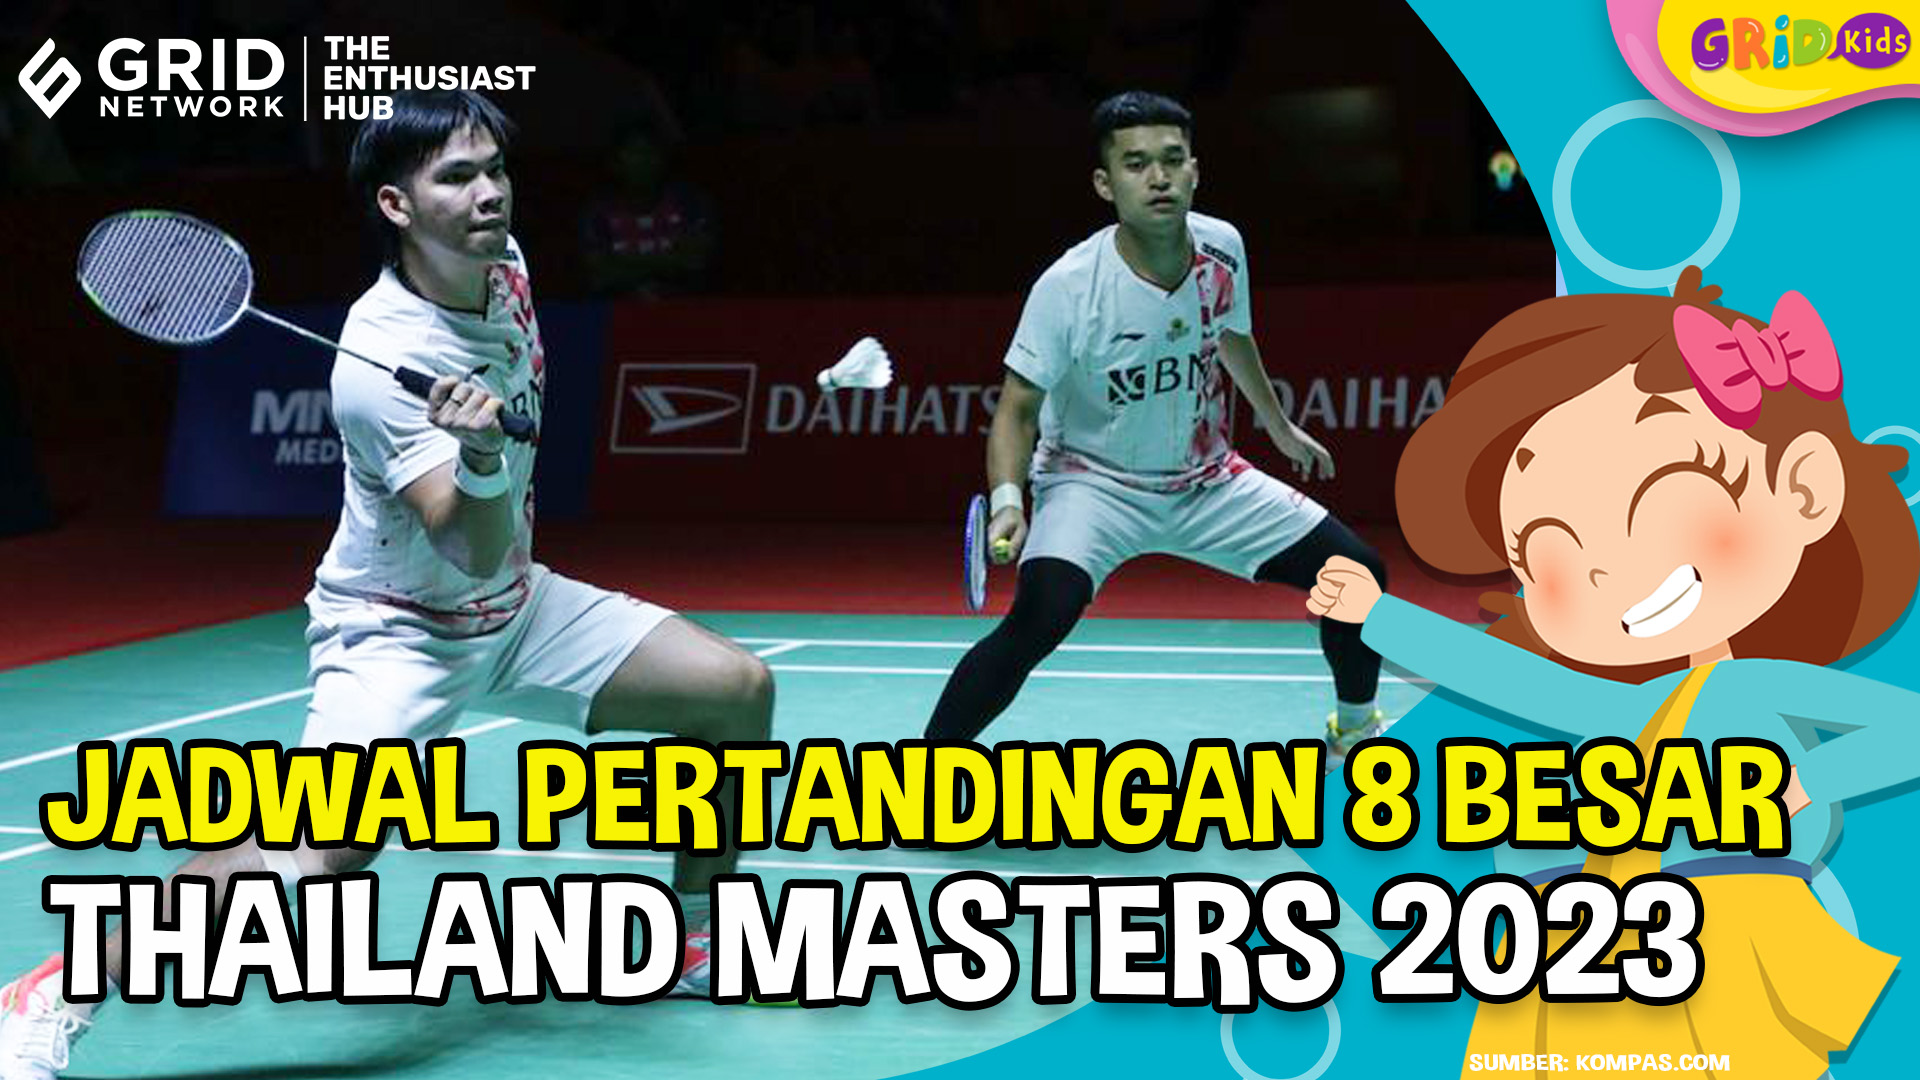 Jadwal Pertandingan Perempat Final Thailand Masters 2023, Ada 9 Wakil Indonesia - Viral